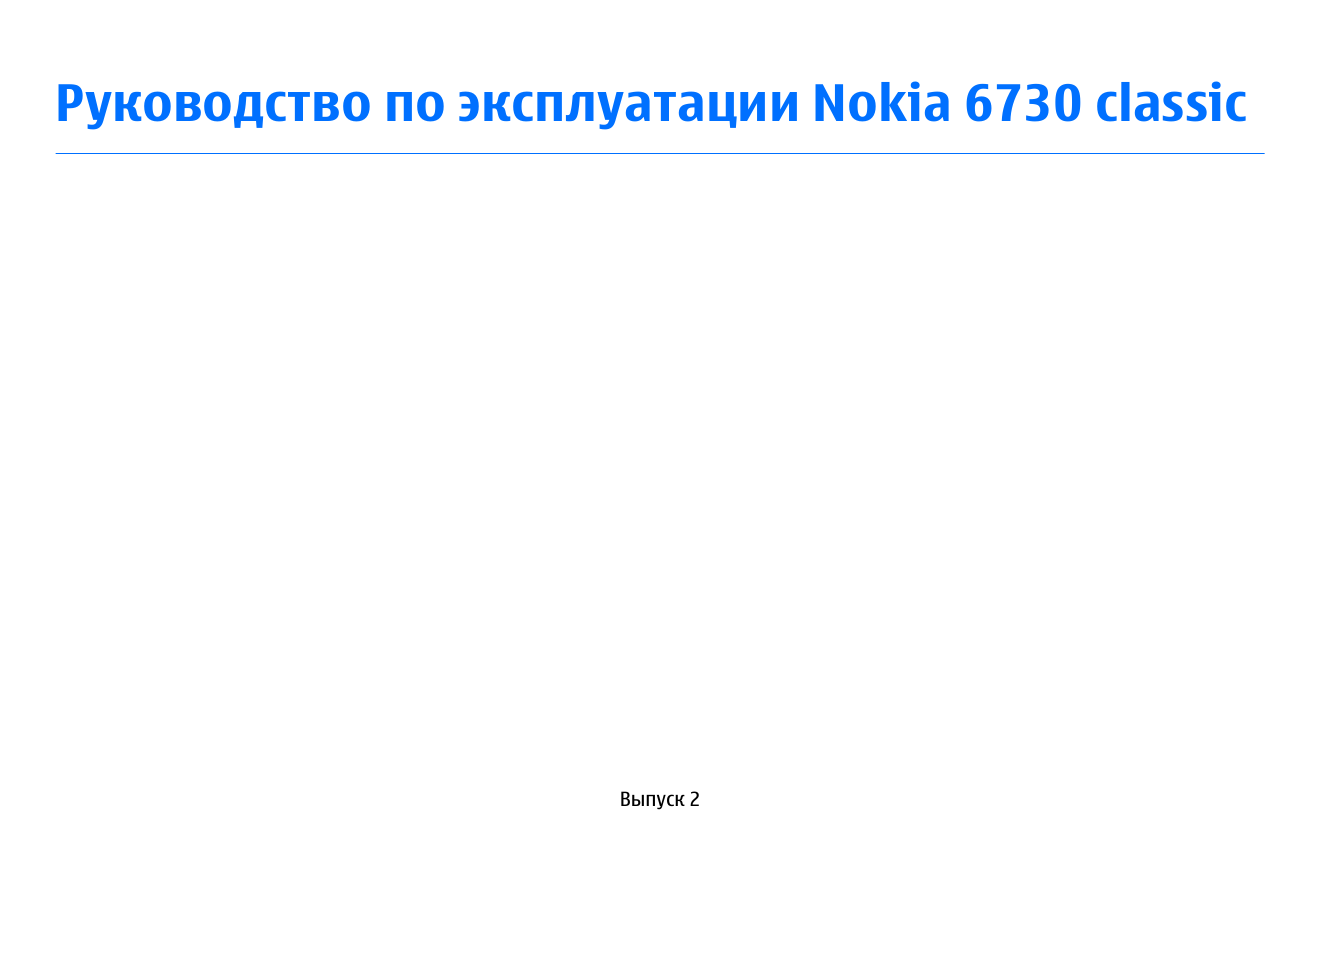 Инструкция по эксплуатации Nokia 6730 Classic | 84 страницы